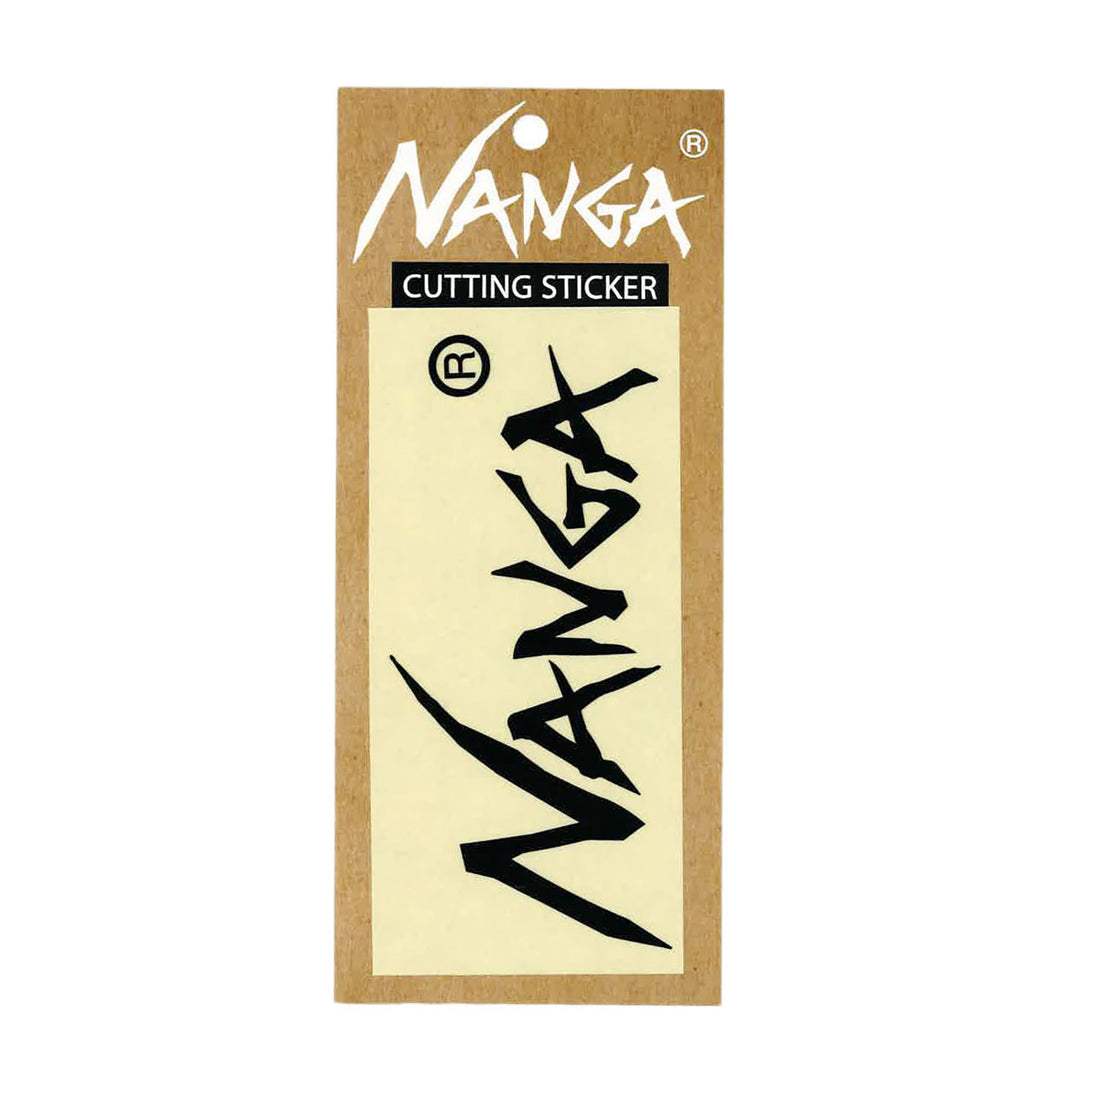 NANGA CUTTING STICKER / ナンガカッティングステッカー (6313647374510)